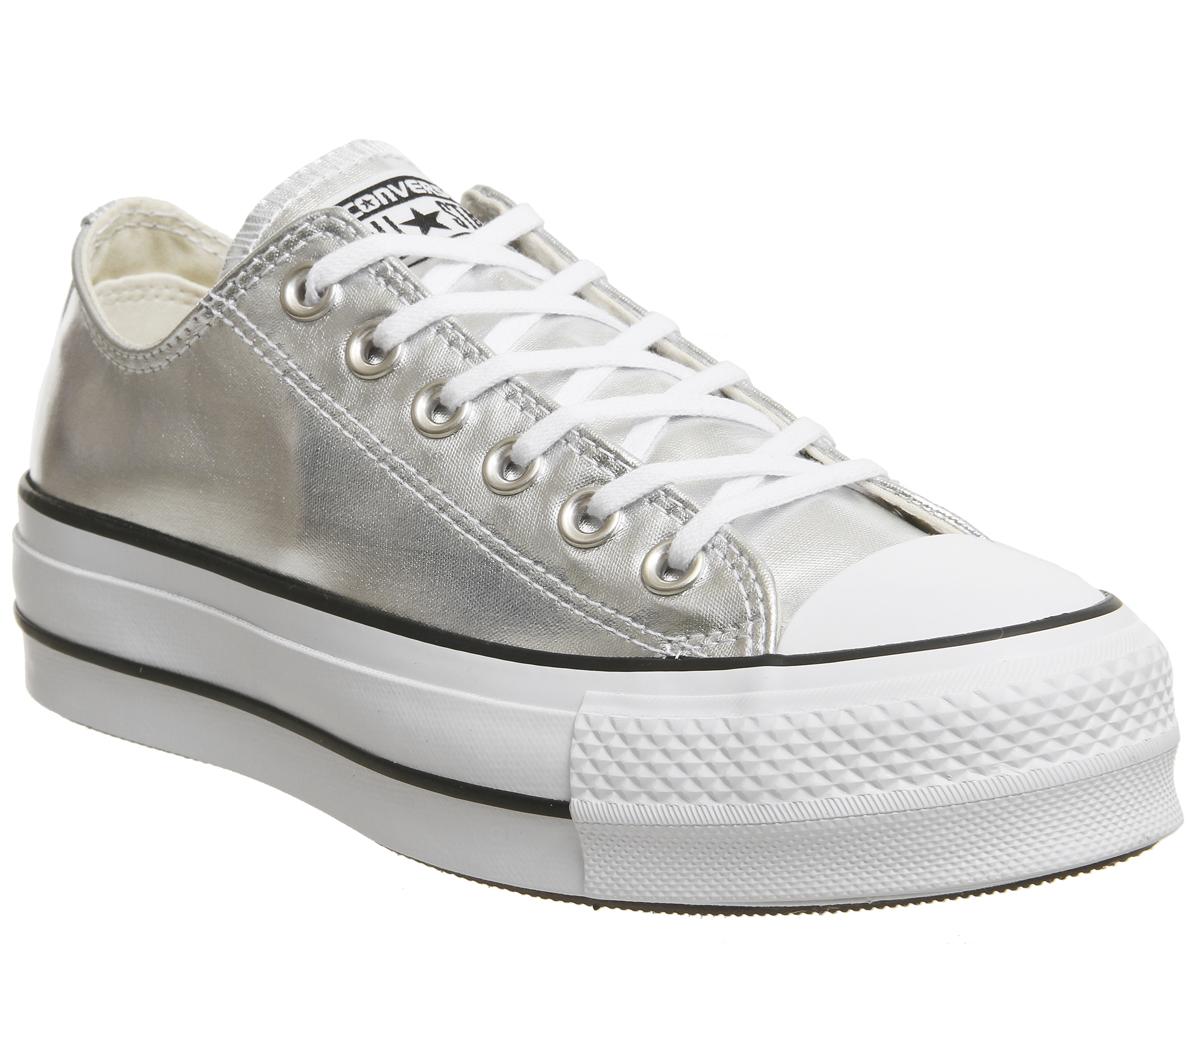 shiny silver converse